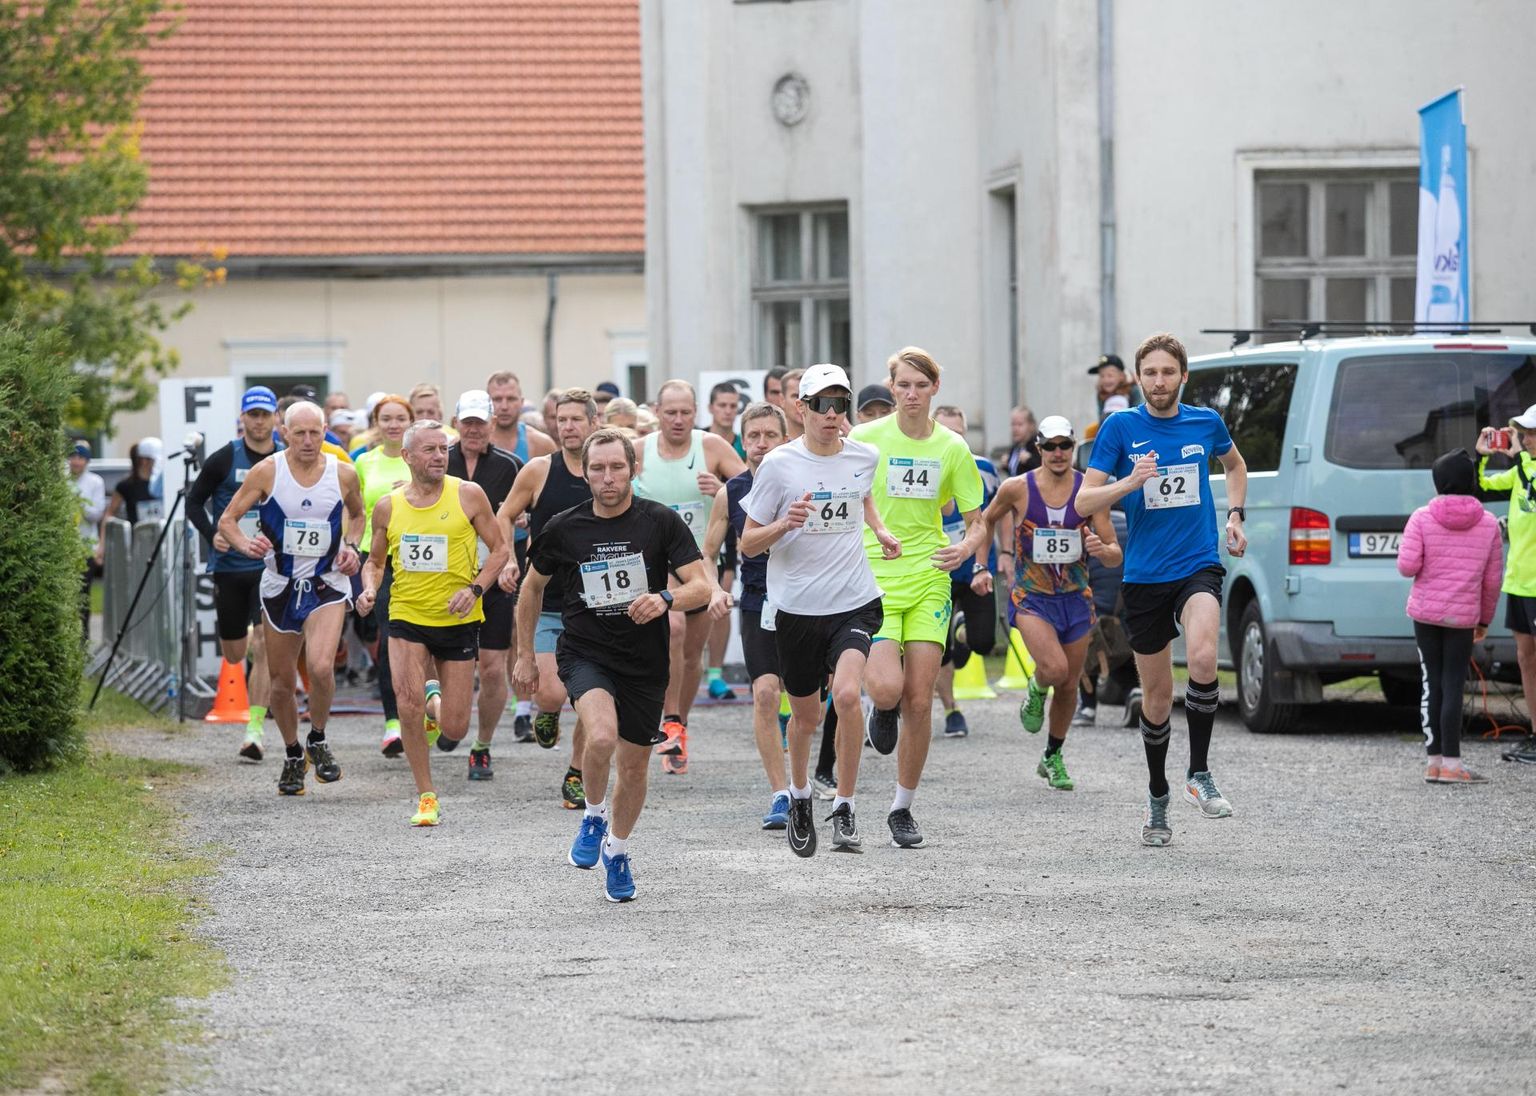 Rõõmsad jooksjad Porkunis. Foto on illustratiivne.